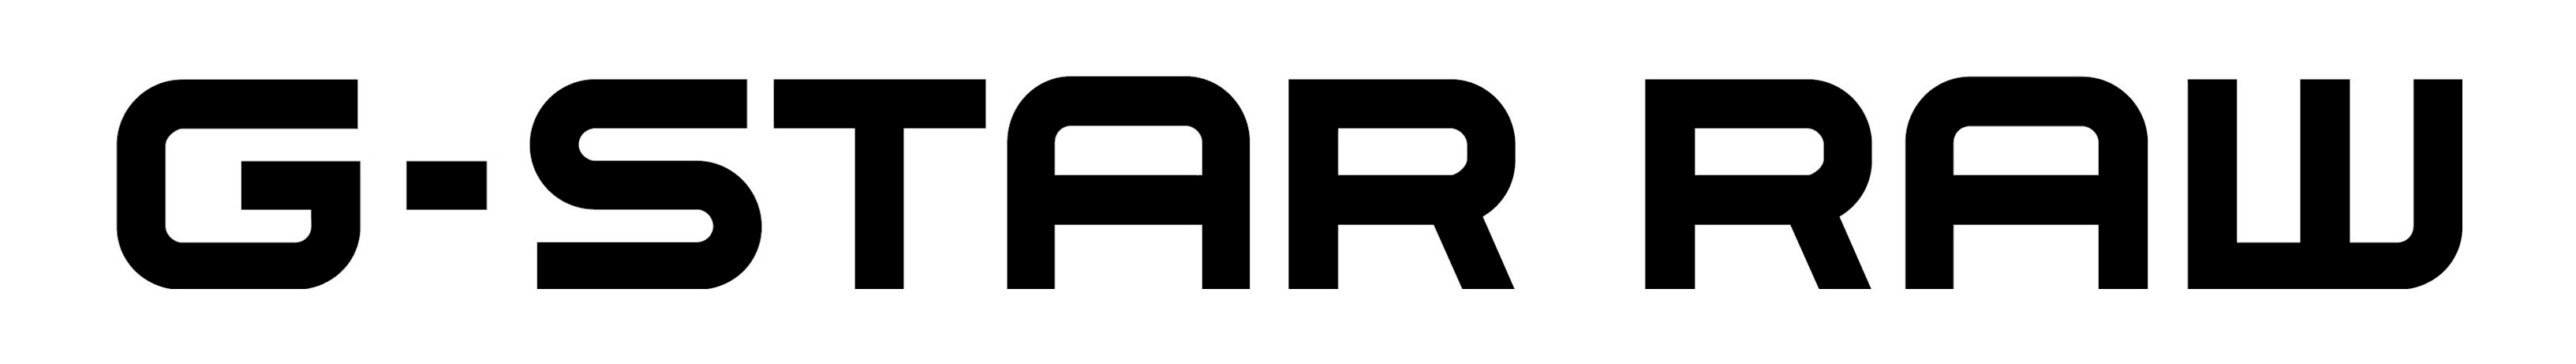 G-Star Raw Logo